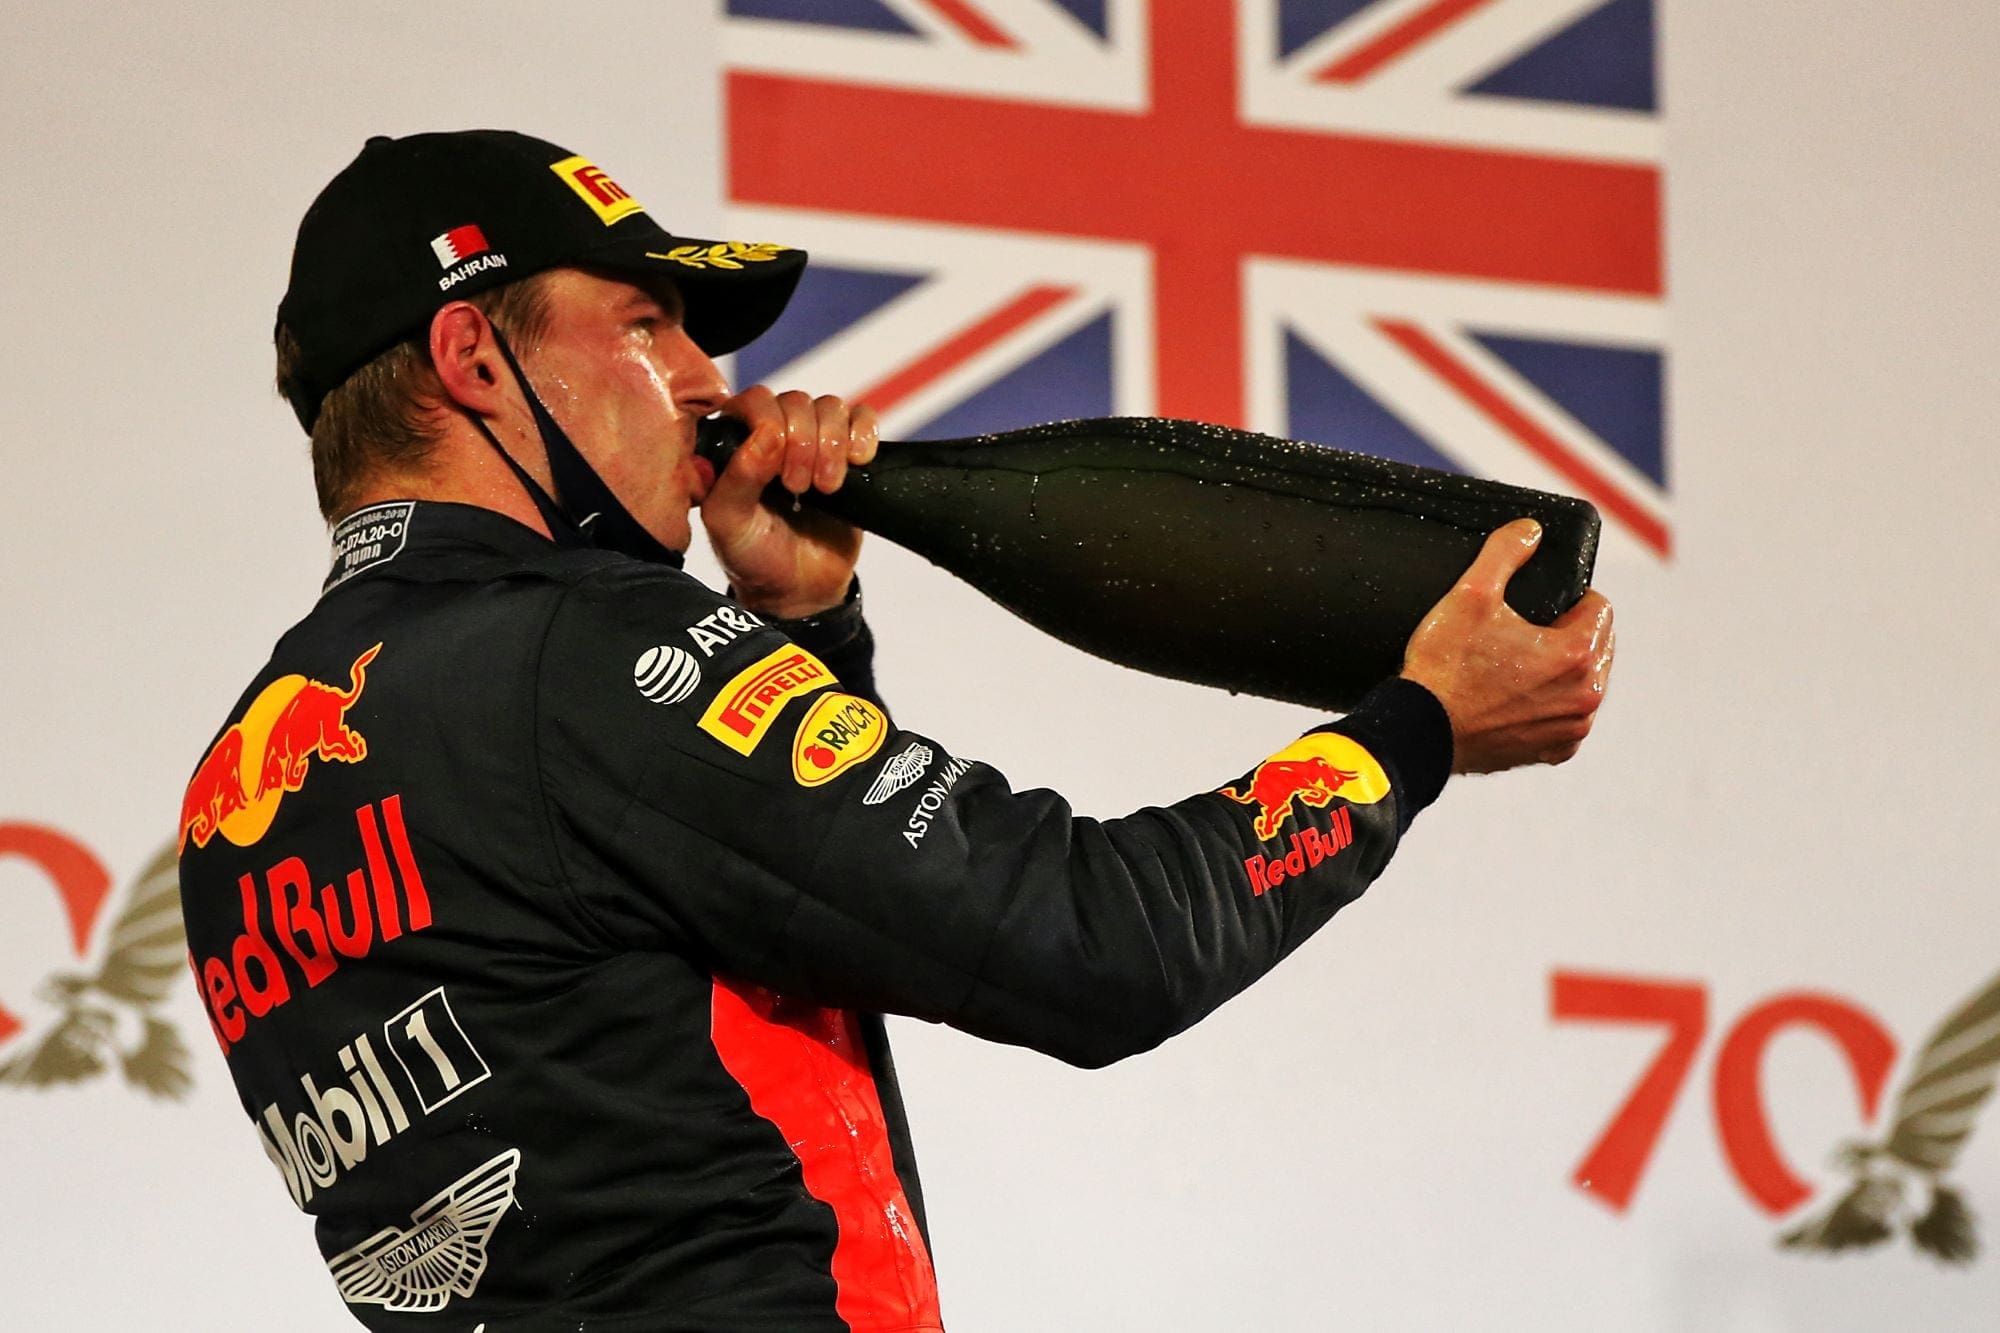 Galeria: confira as imagens do Grande Prêmio do Bahrein de F1